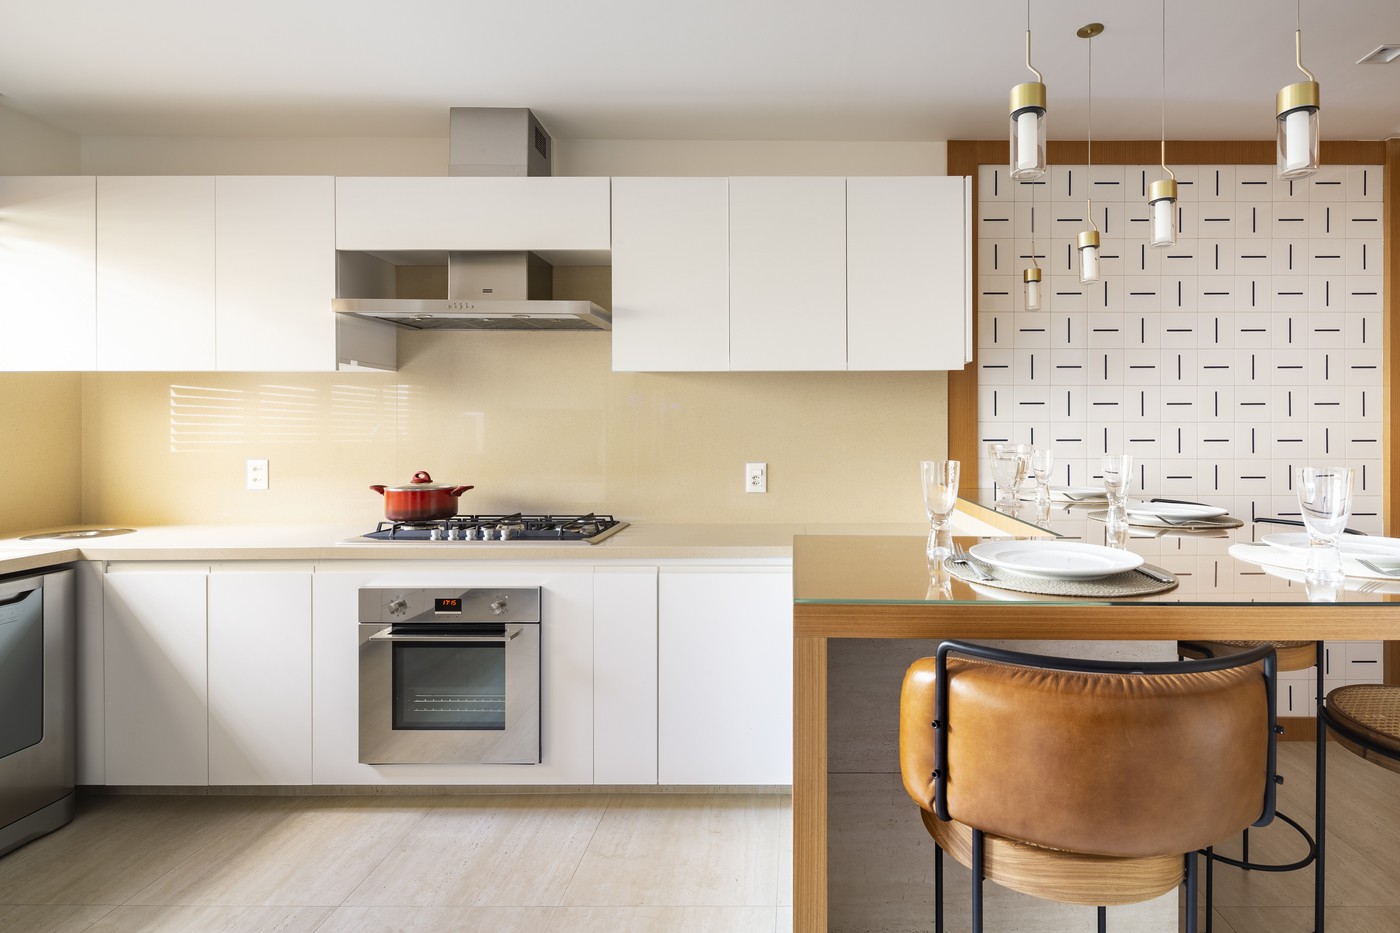 Décor do dia: cozinha com armários brancos e painel de azulejos decorativos (Foto: Joana França)